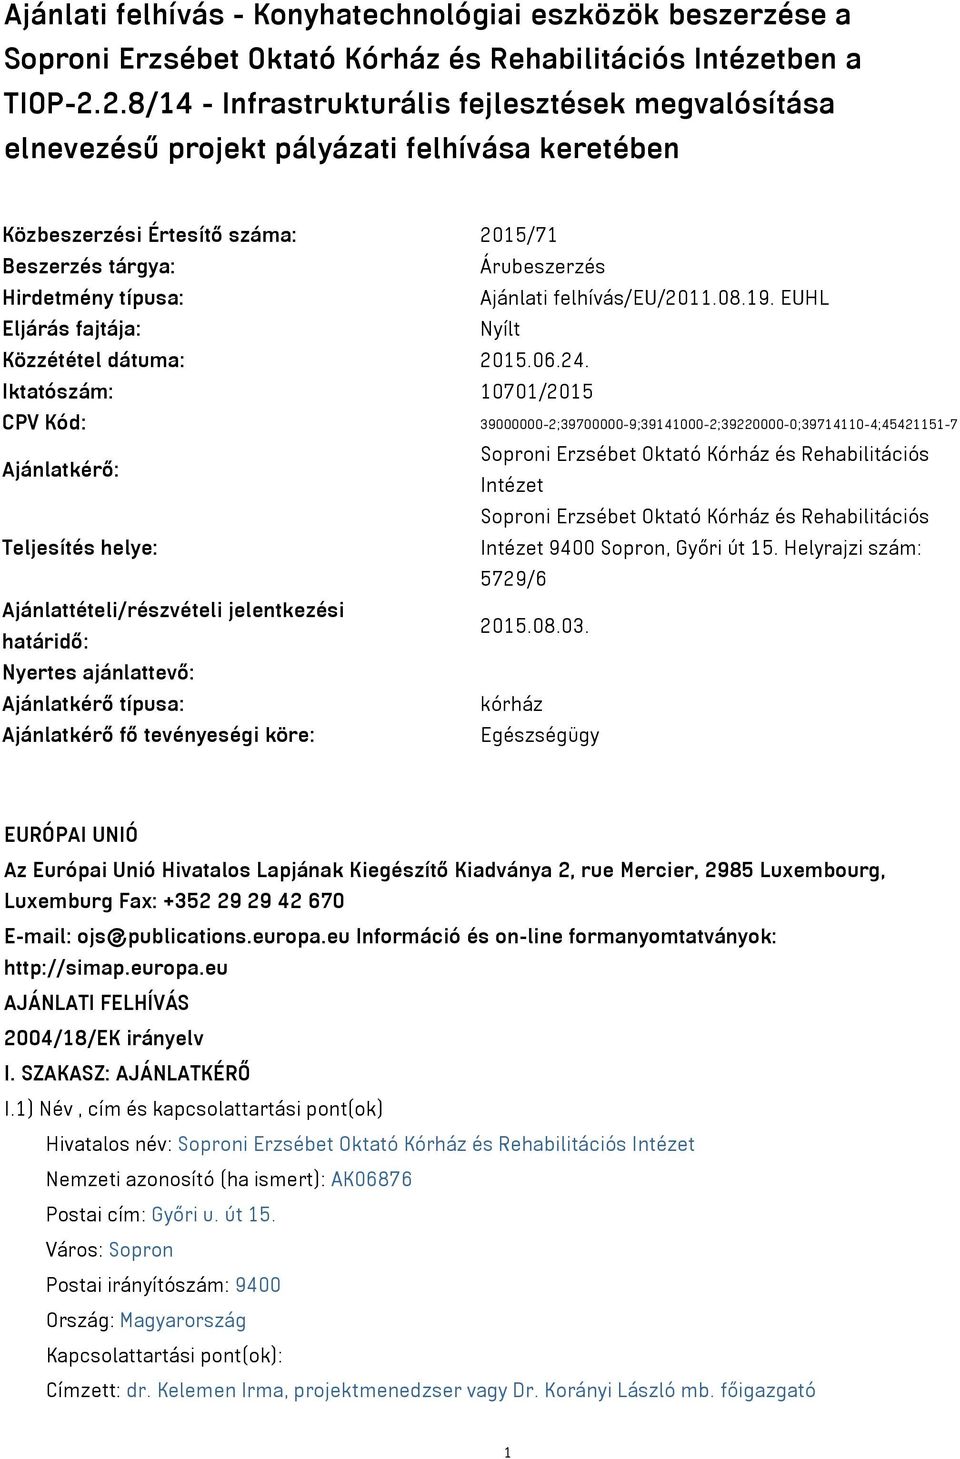 felhívás/eu/2011.08.19. EUHL Eljárás fajtája: Nyílt Közzététel dátuma: 2015.06.24.